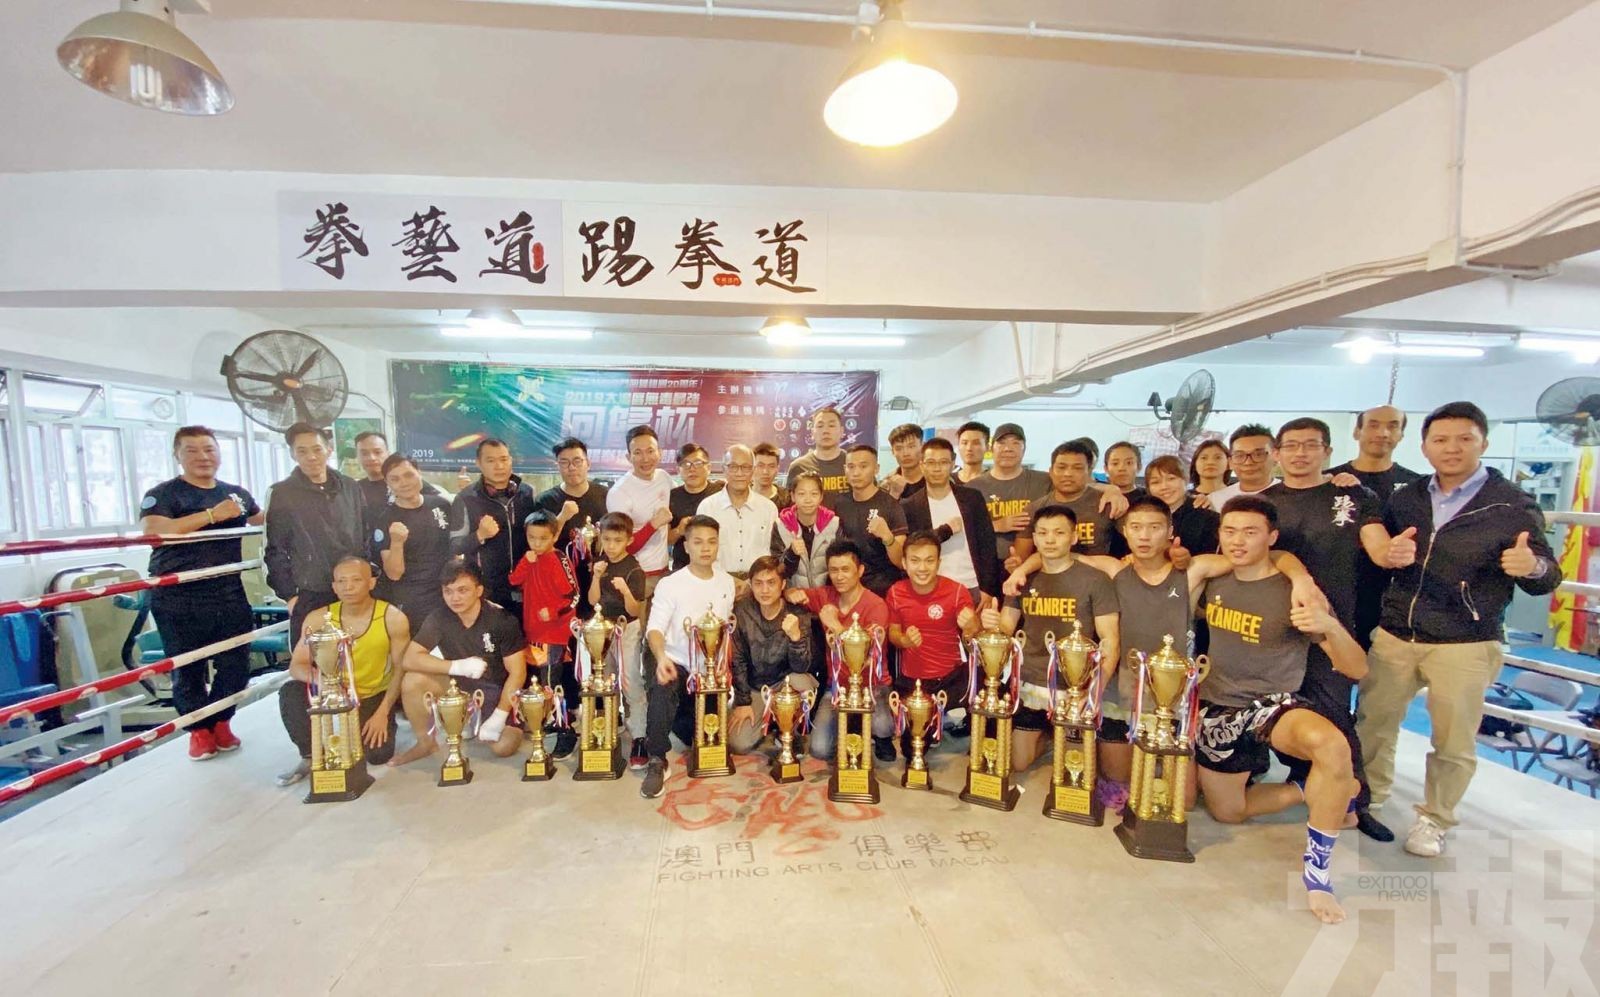 逾200人參與「回歸盃」踢拳搏擊賽